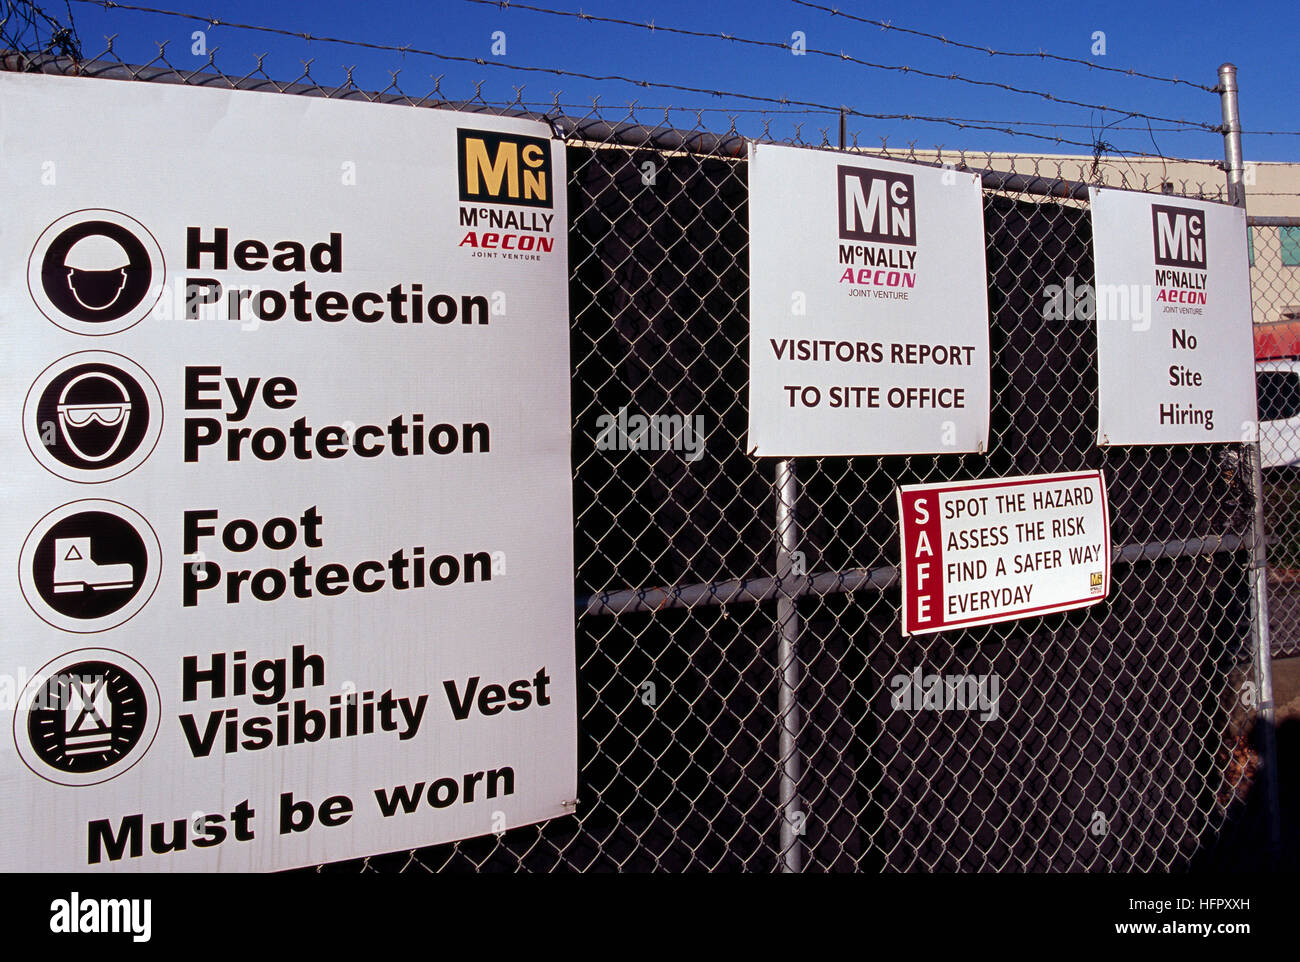 Sito in costruzione simbolo di sicurezza - Norme e regolamenti per la protezione dei lavoratori pubblicato sulla recinzione al lavoro di costruzione sito Foto Stock